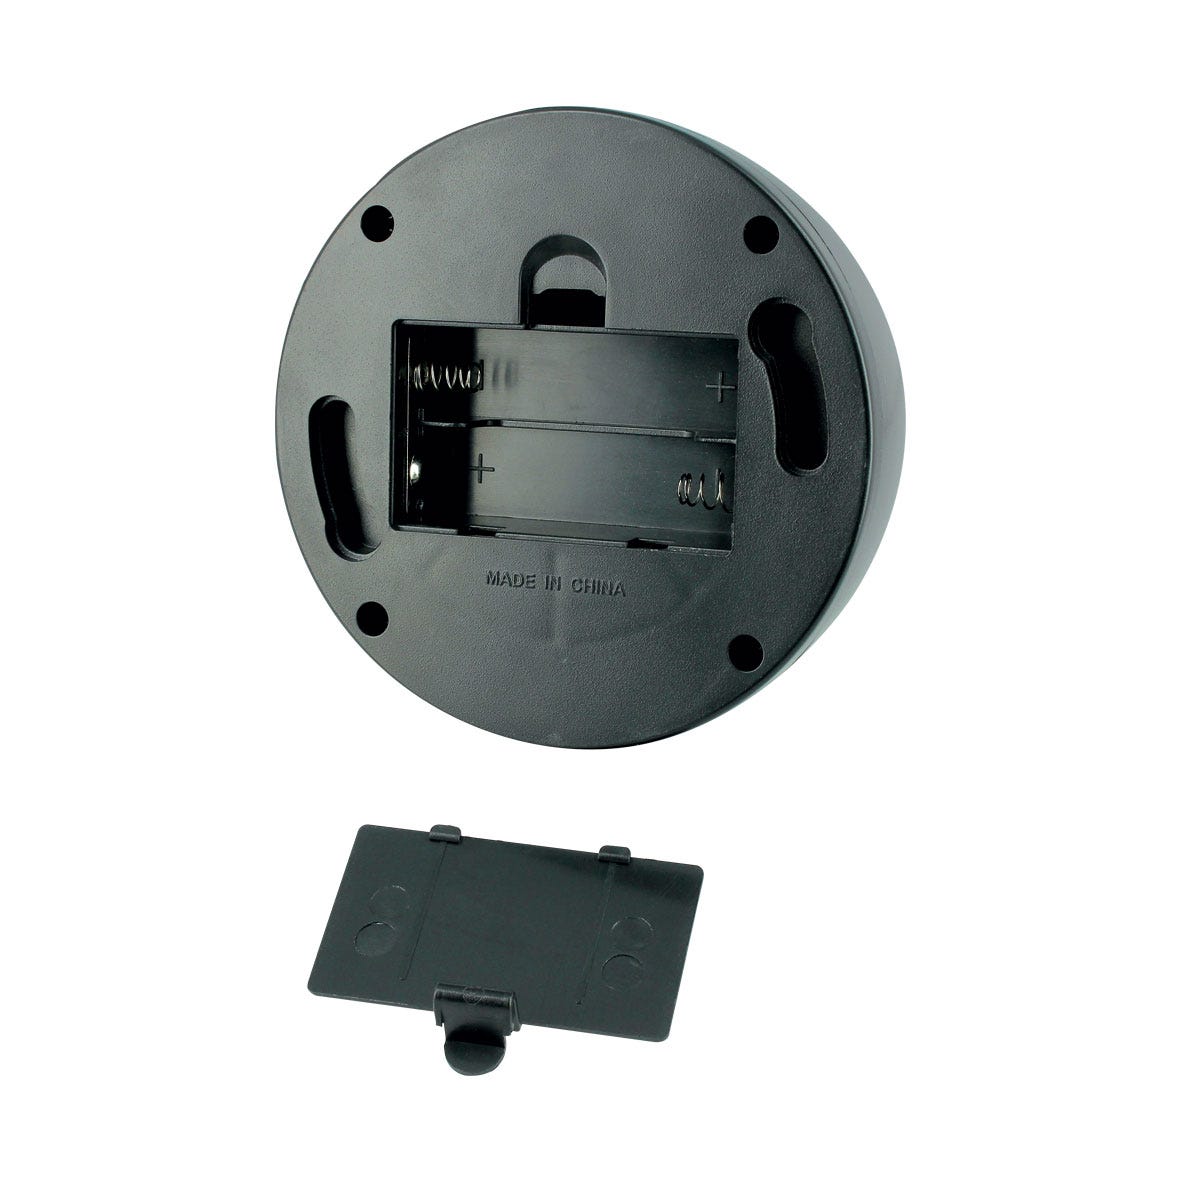 Caméra de surveillance factice type dôme avec fonction éclairage - SEDEA - 550985 1